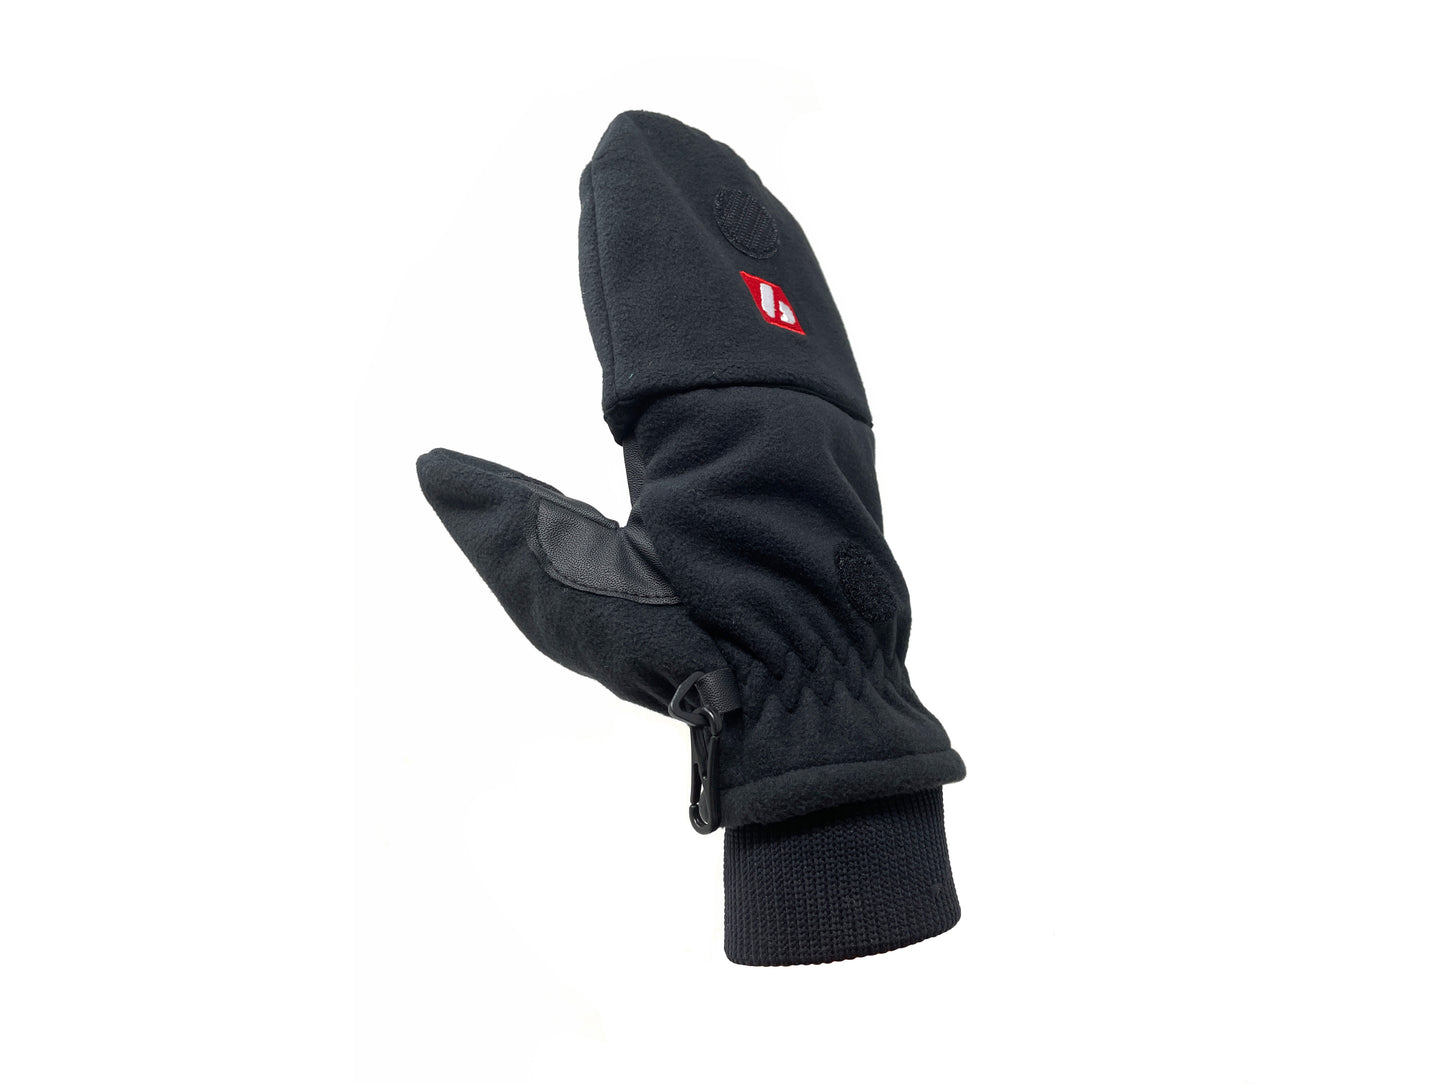 NBG-02 kurze Fingerhandschuhe mit Klappe, Fäustlinge, für Temperaturen zwischen +5 und -15°C